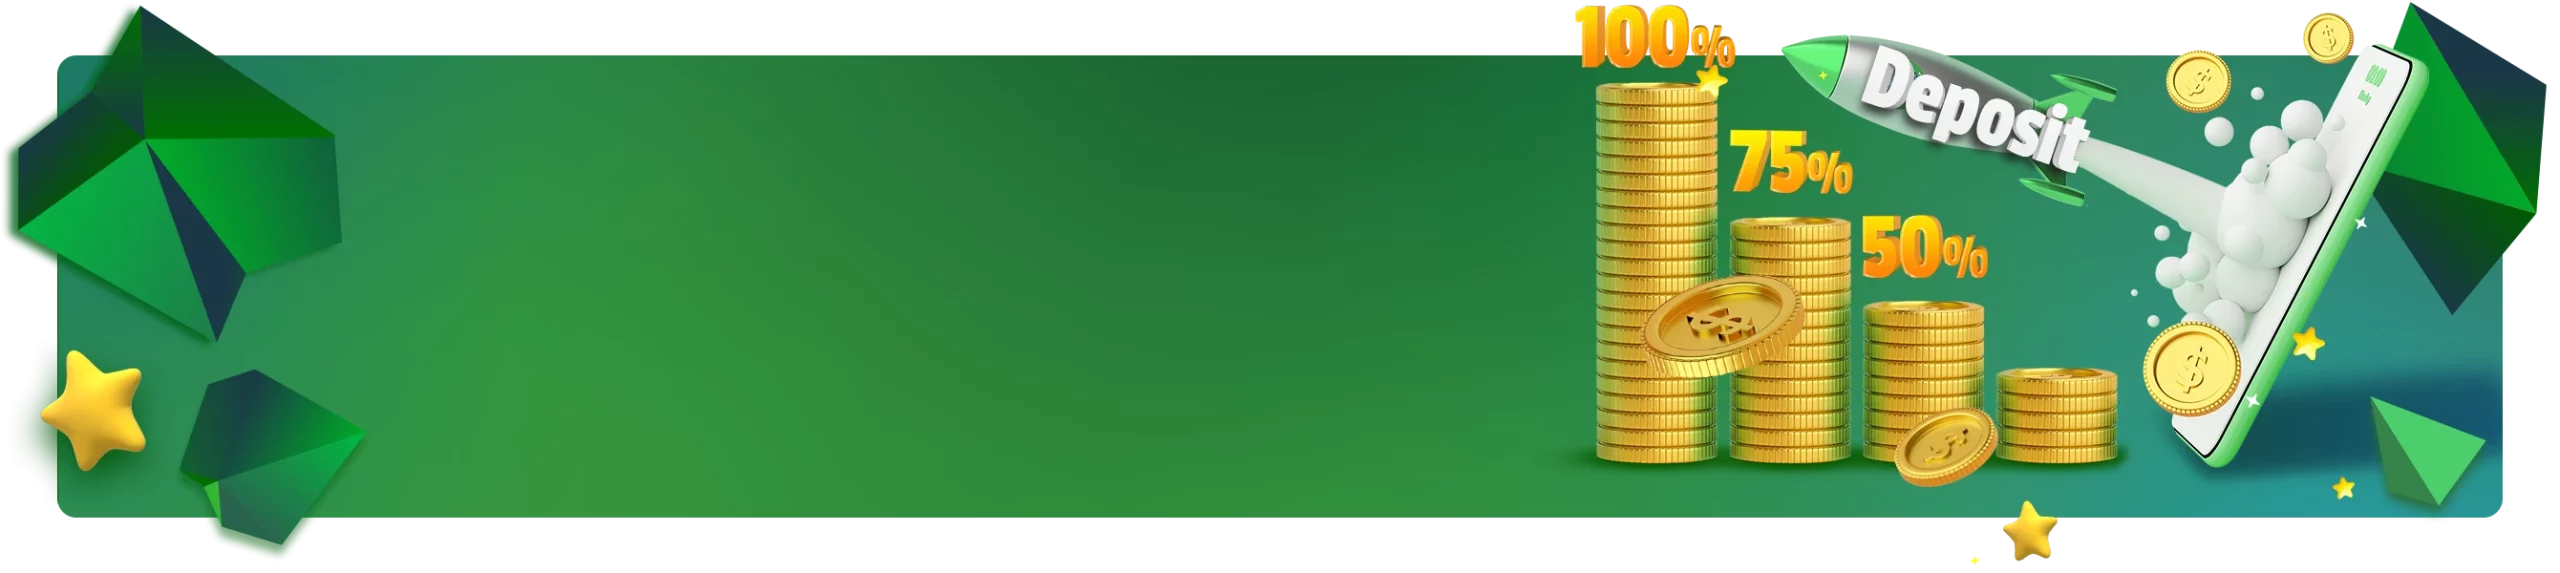 Banner promocional 'Monday Boost' que muestra porcentajes de bonificación como 100%, 75% y 50% junto con pilas de monedas de oro y un teléfono celular que muestra más monedas, con un botón amarillo que dice 'RECIBIR' sobre un fondo verde con estrellas y polígonos.